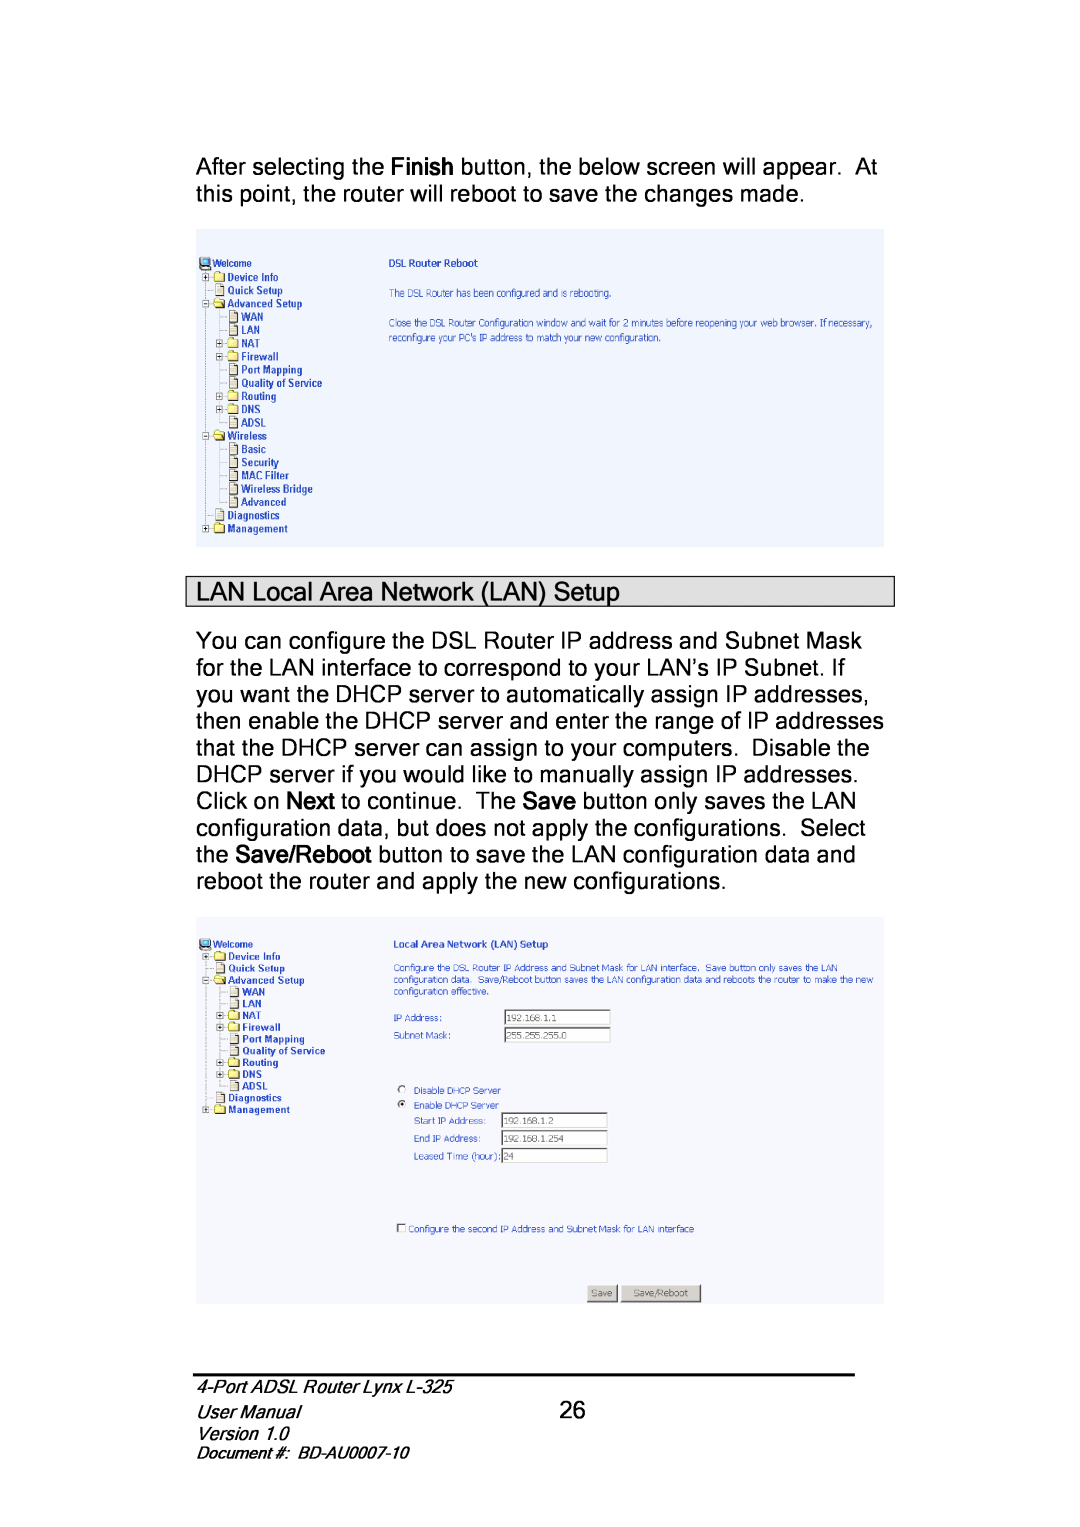 Lynx L-325 user manual LAN Local Area Network LAN Setup 